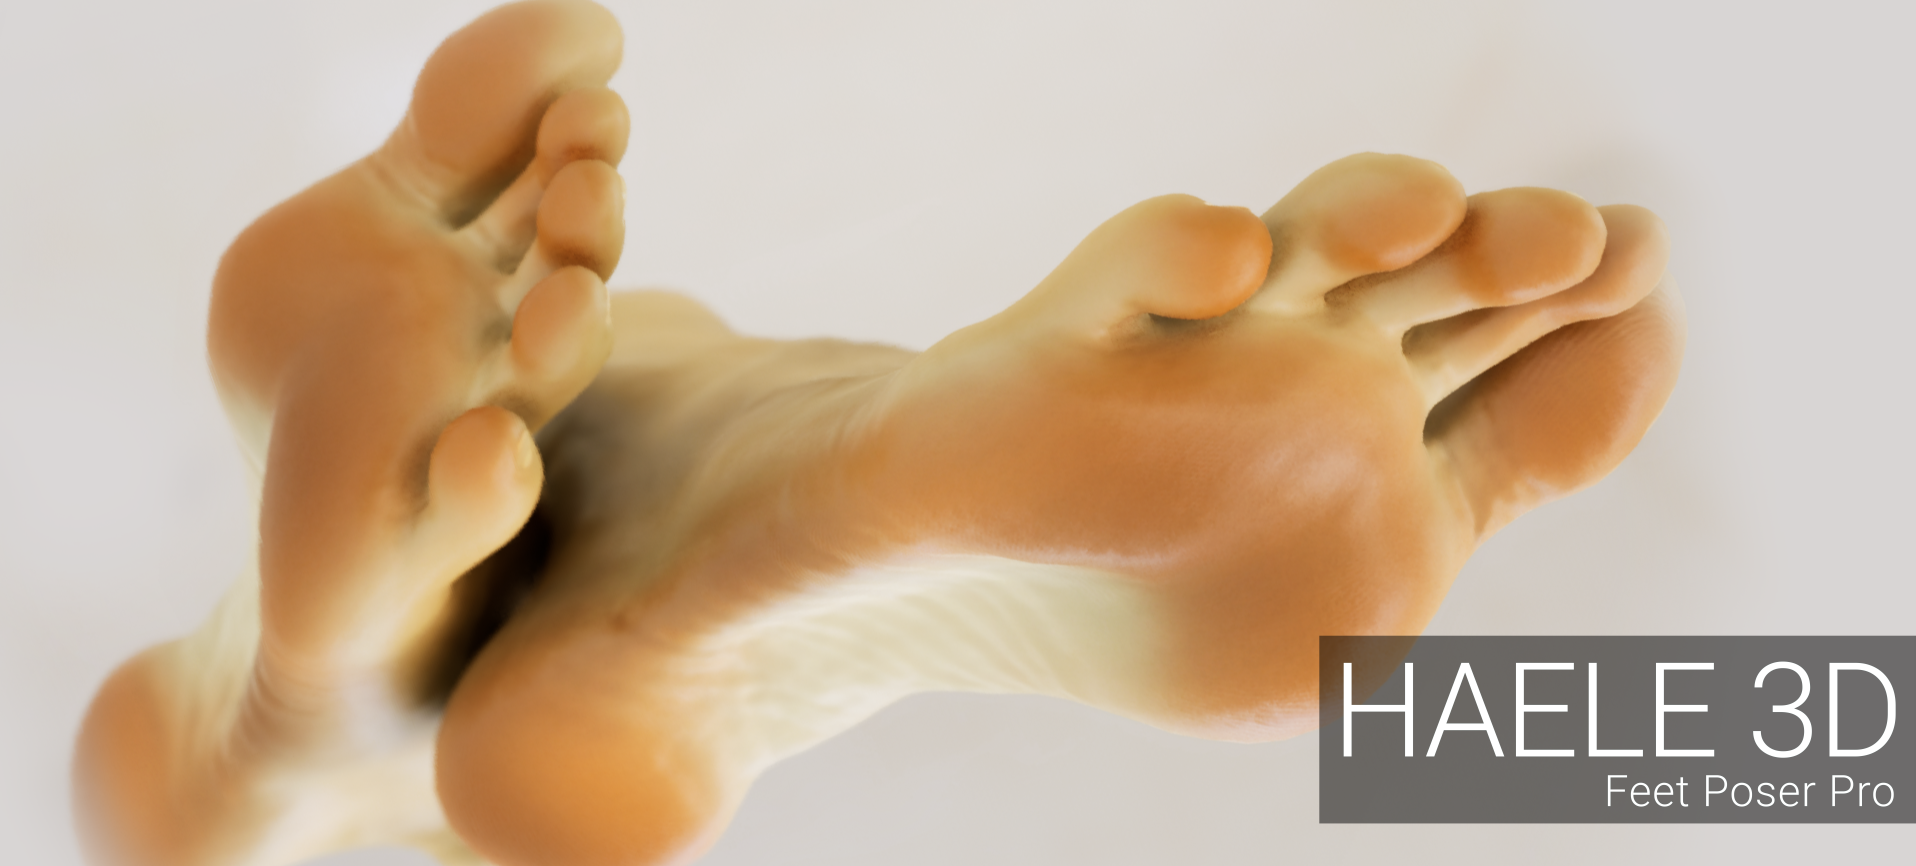 HAELE 3D - Feet Poser Pro Demo